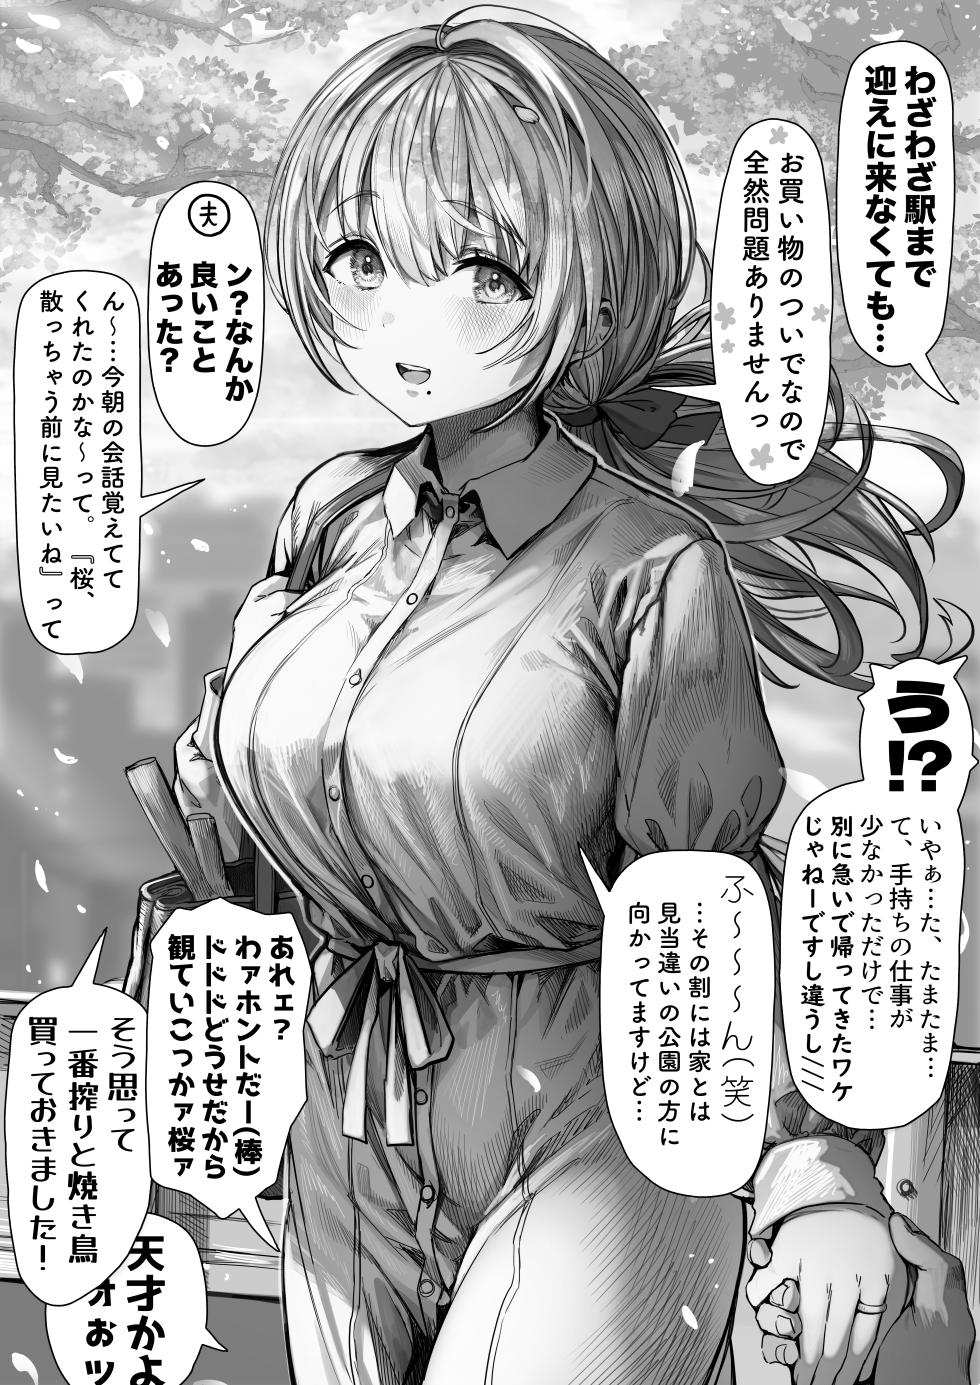 [gibachan] Okusan manga collection - Page 36